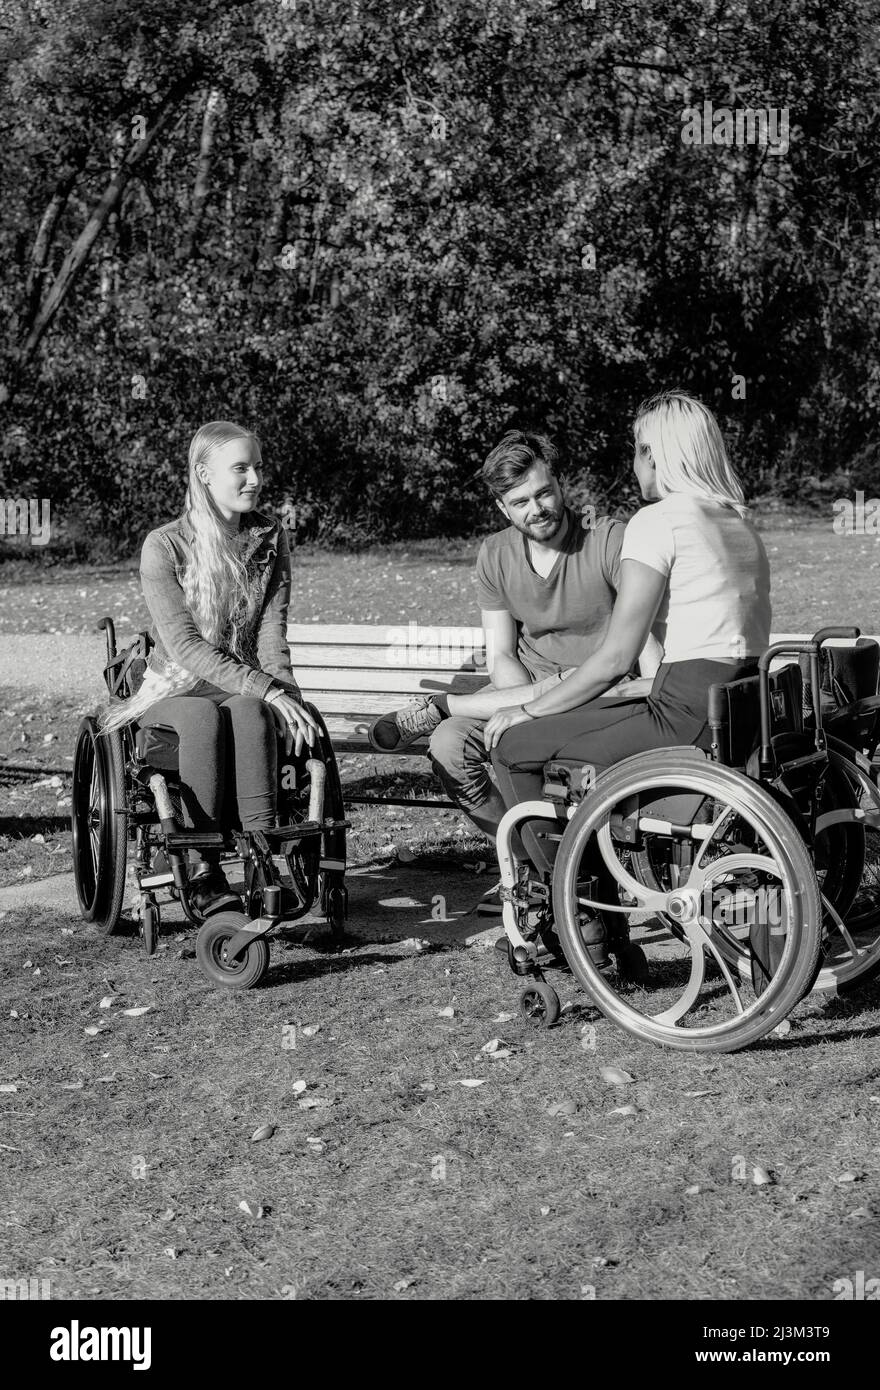 Schwarz-Weiß-Bild einer Gruppe von drei jungen Querschnittsgelähmten in ihren Rollstühlen, die an einem schönen sonnigen Tag gemeinsam in einem Park zu Besuch sind Stockfoto